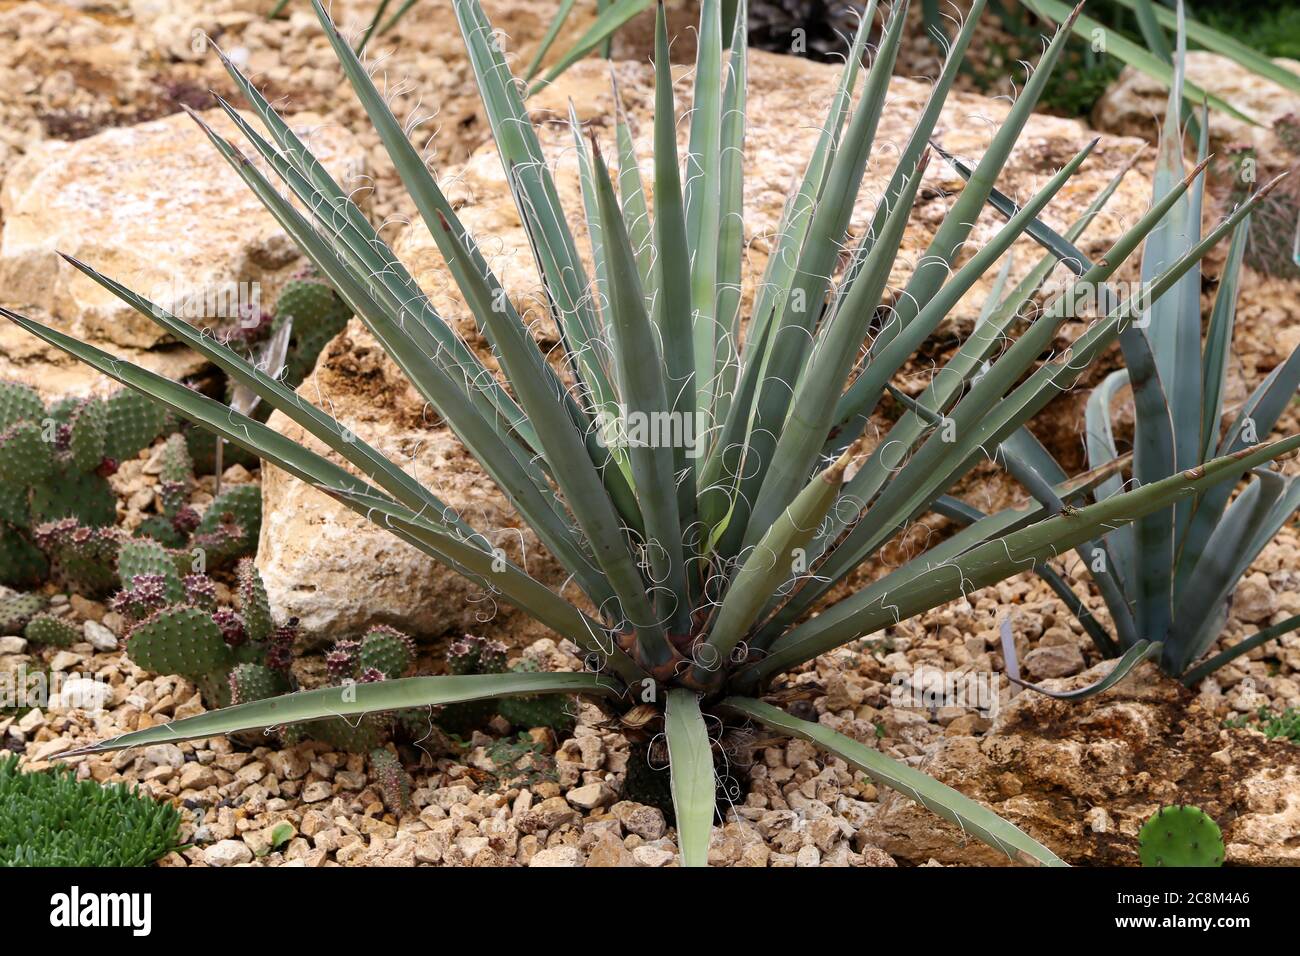 Green cactus grows on rocky soil in garden. Stock Photo